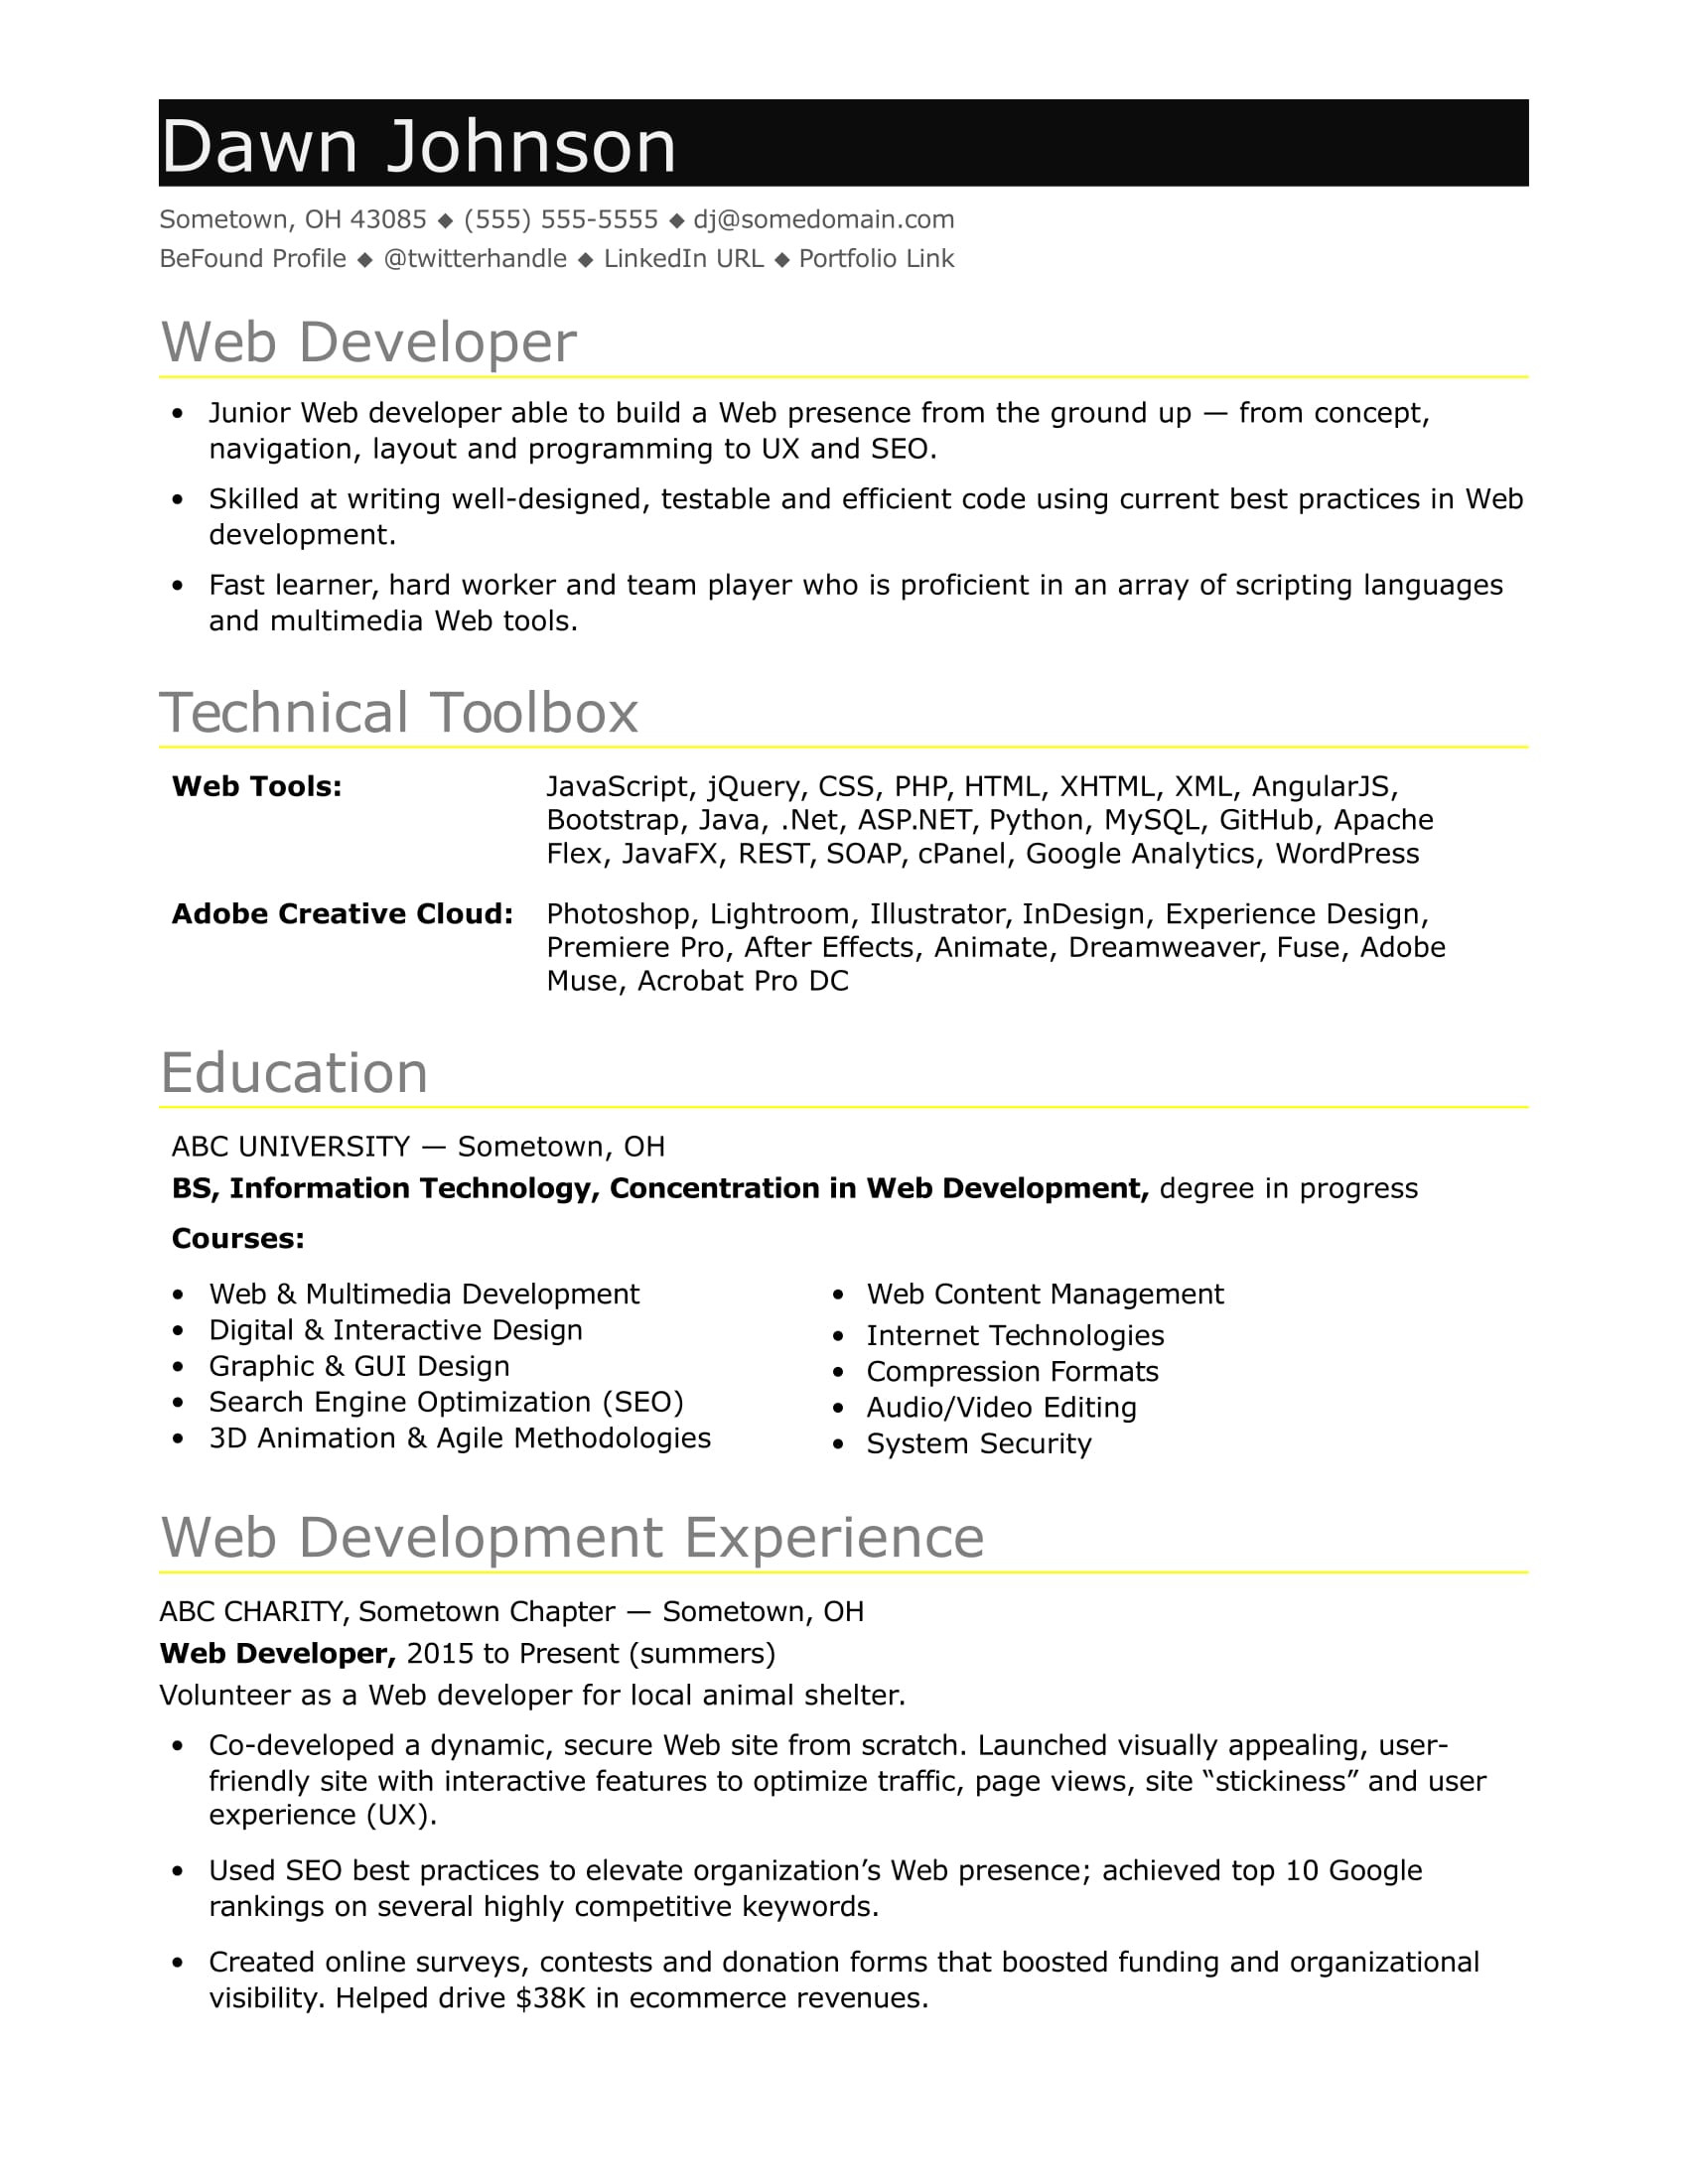 Sample Resume for Python Developer for 2 Years Experience Sample Resume for An Entry-level It Developer Monster.com